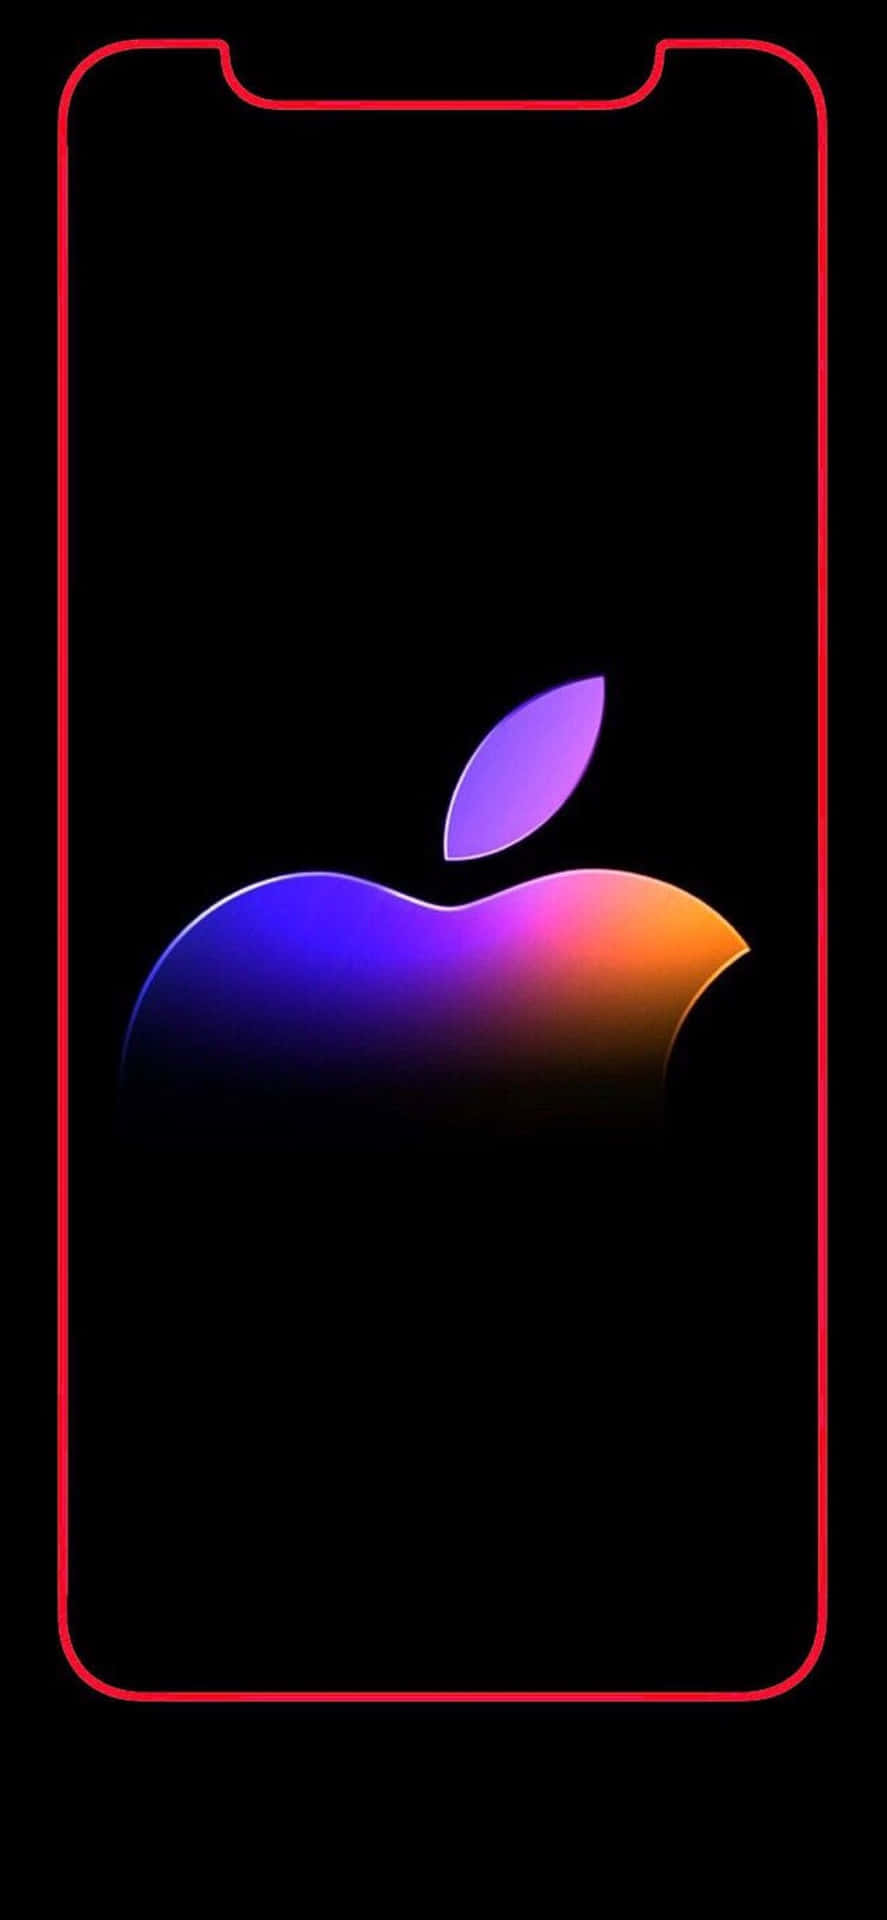 Dasikonische Apple-logo Auf Der Rückseite Des Iphone X. Wallpaper